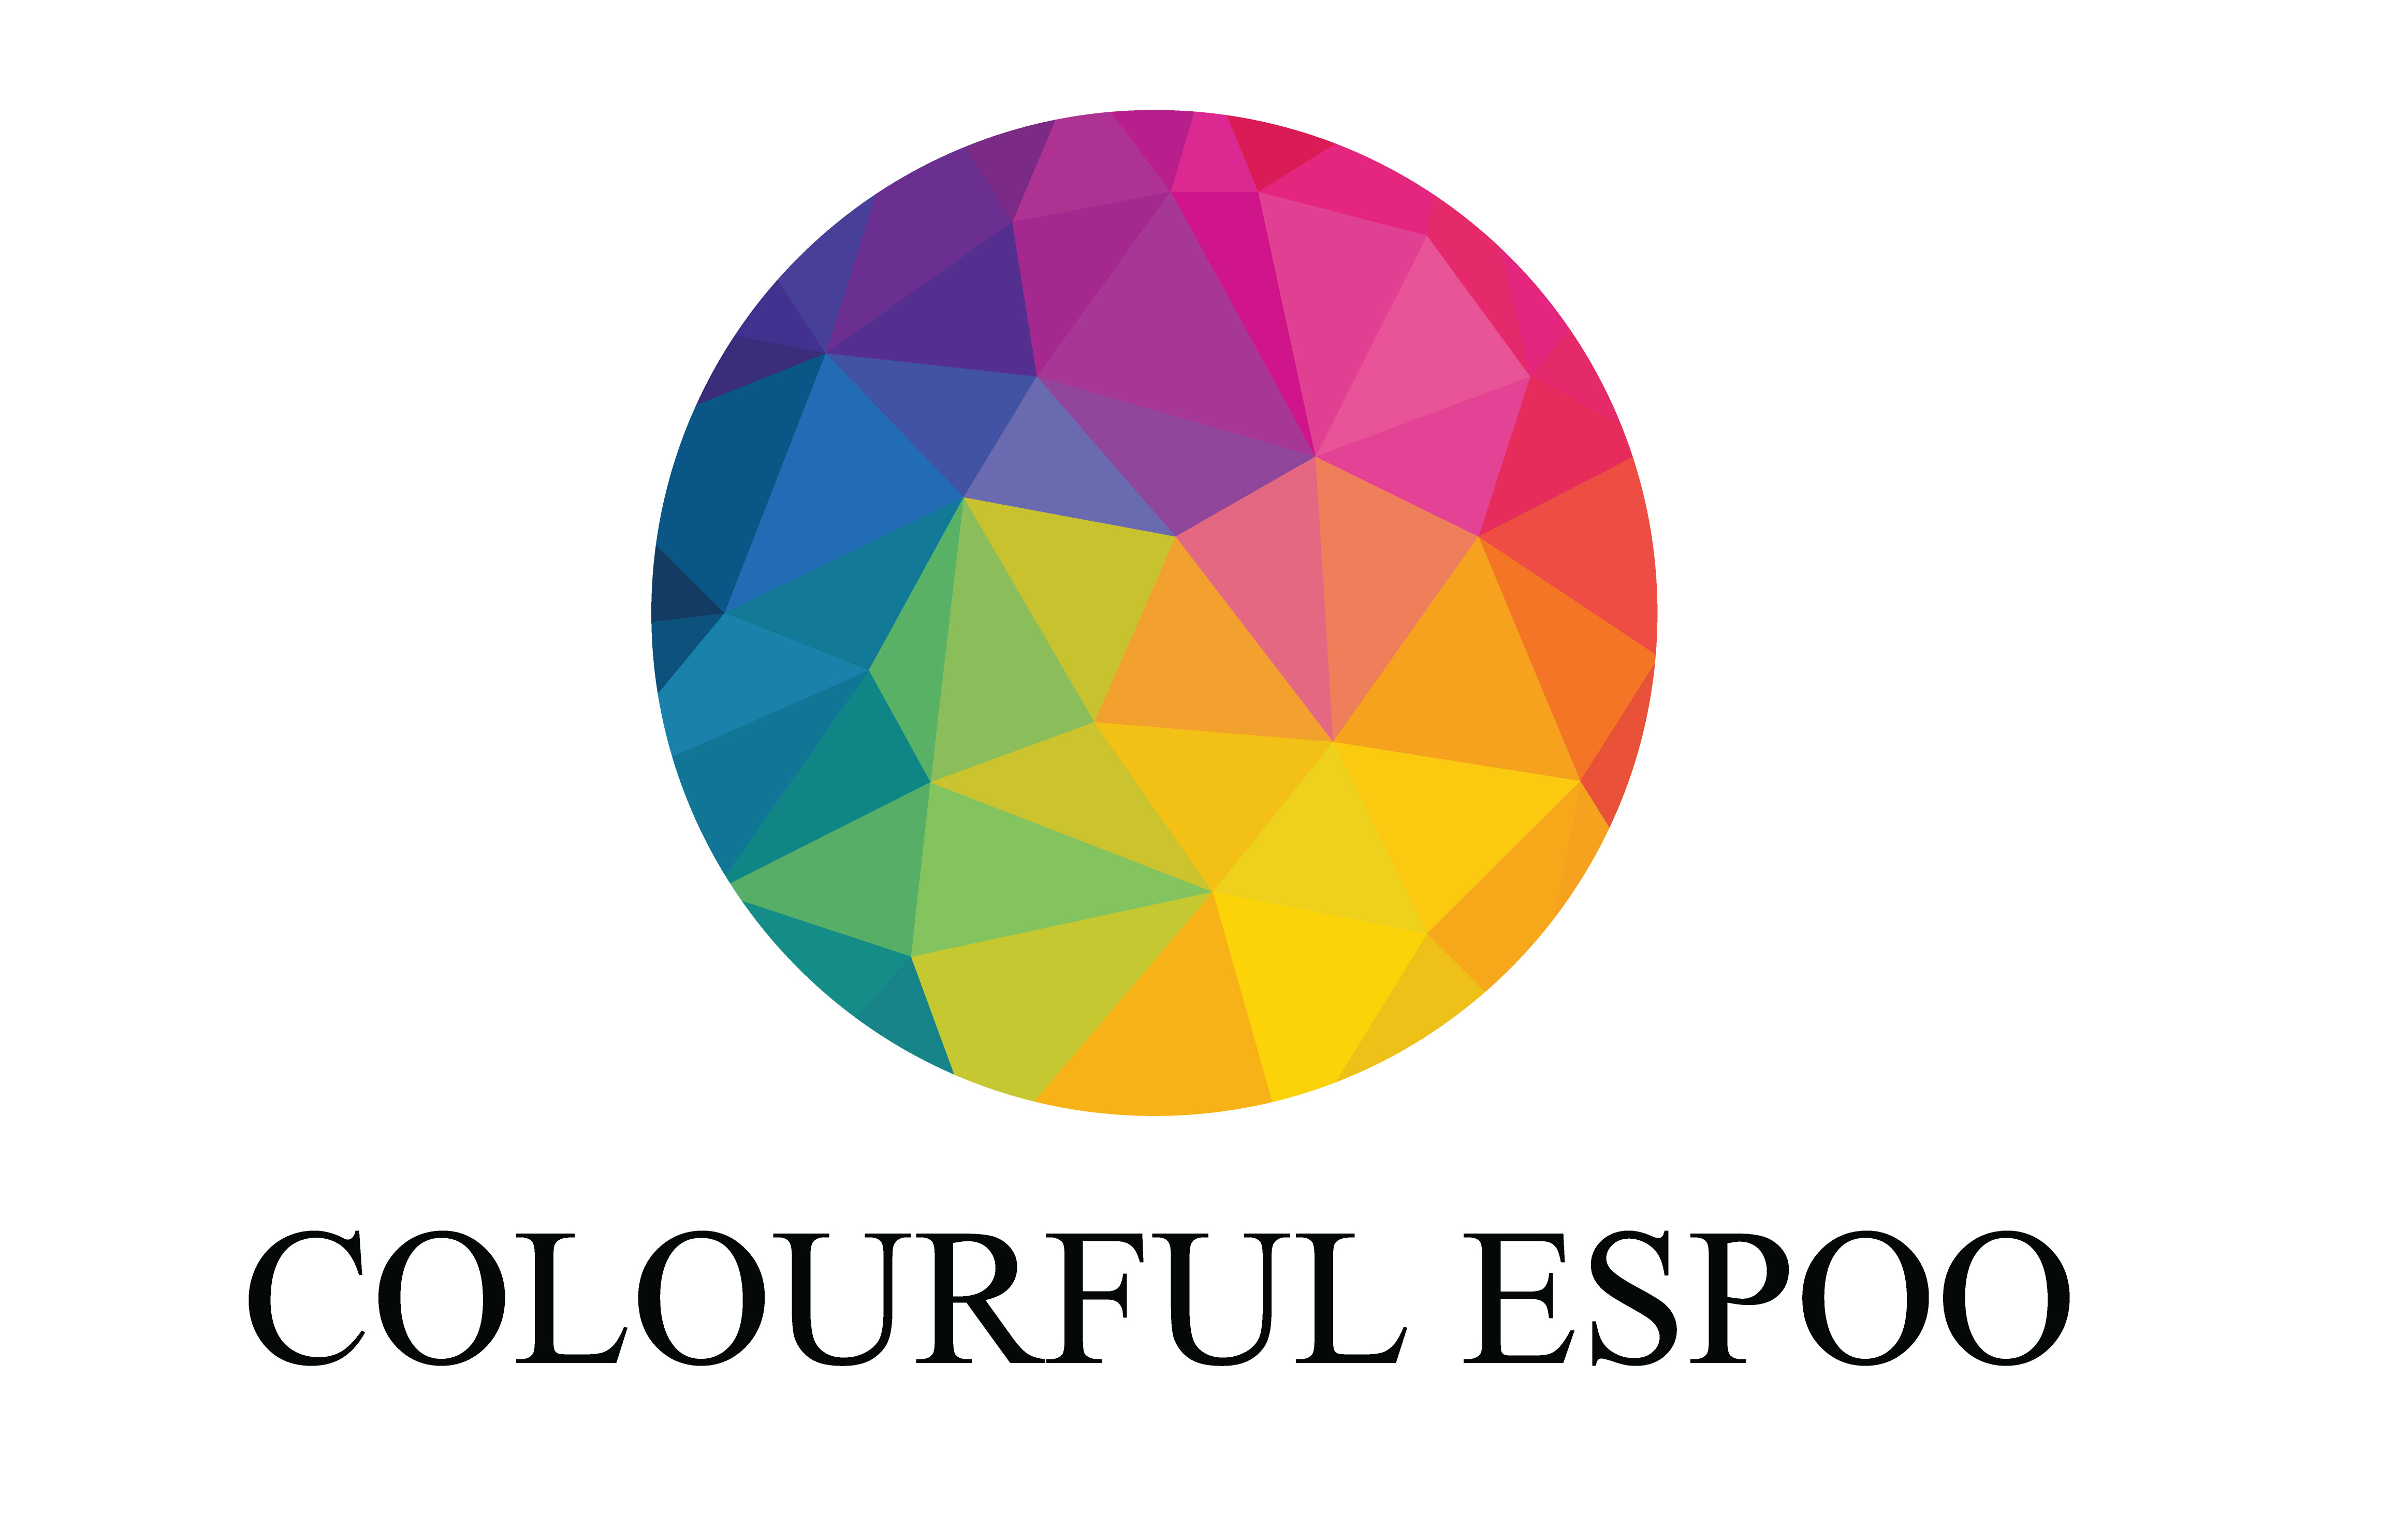 Colourful Espoo -logo tällä tekstillä ja värikäs pallo.